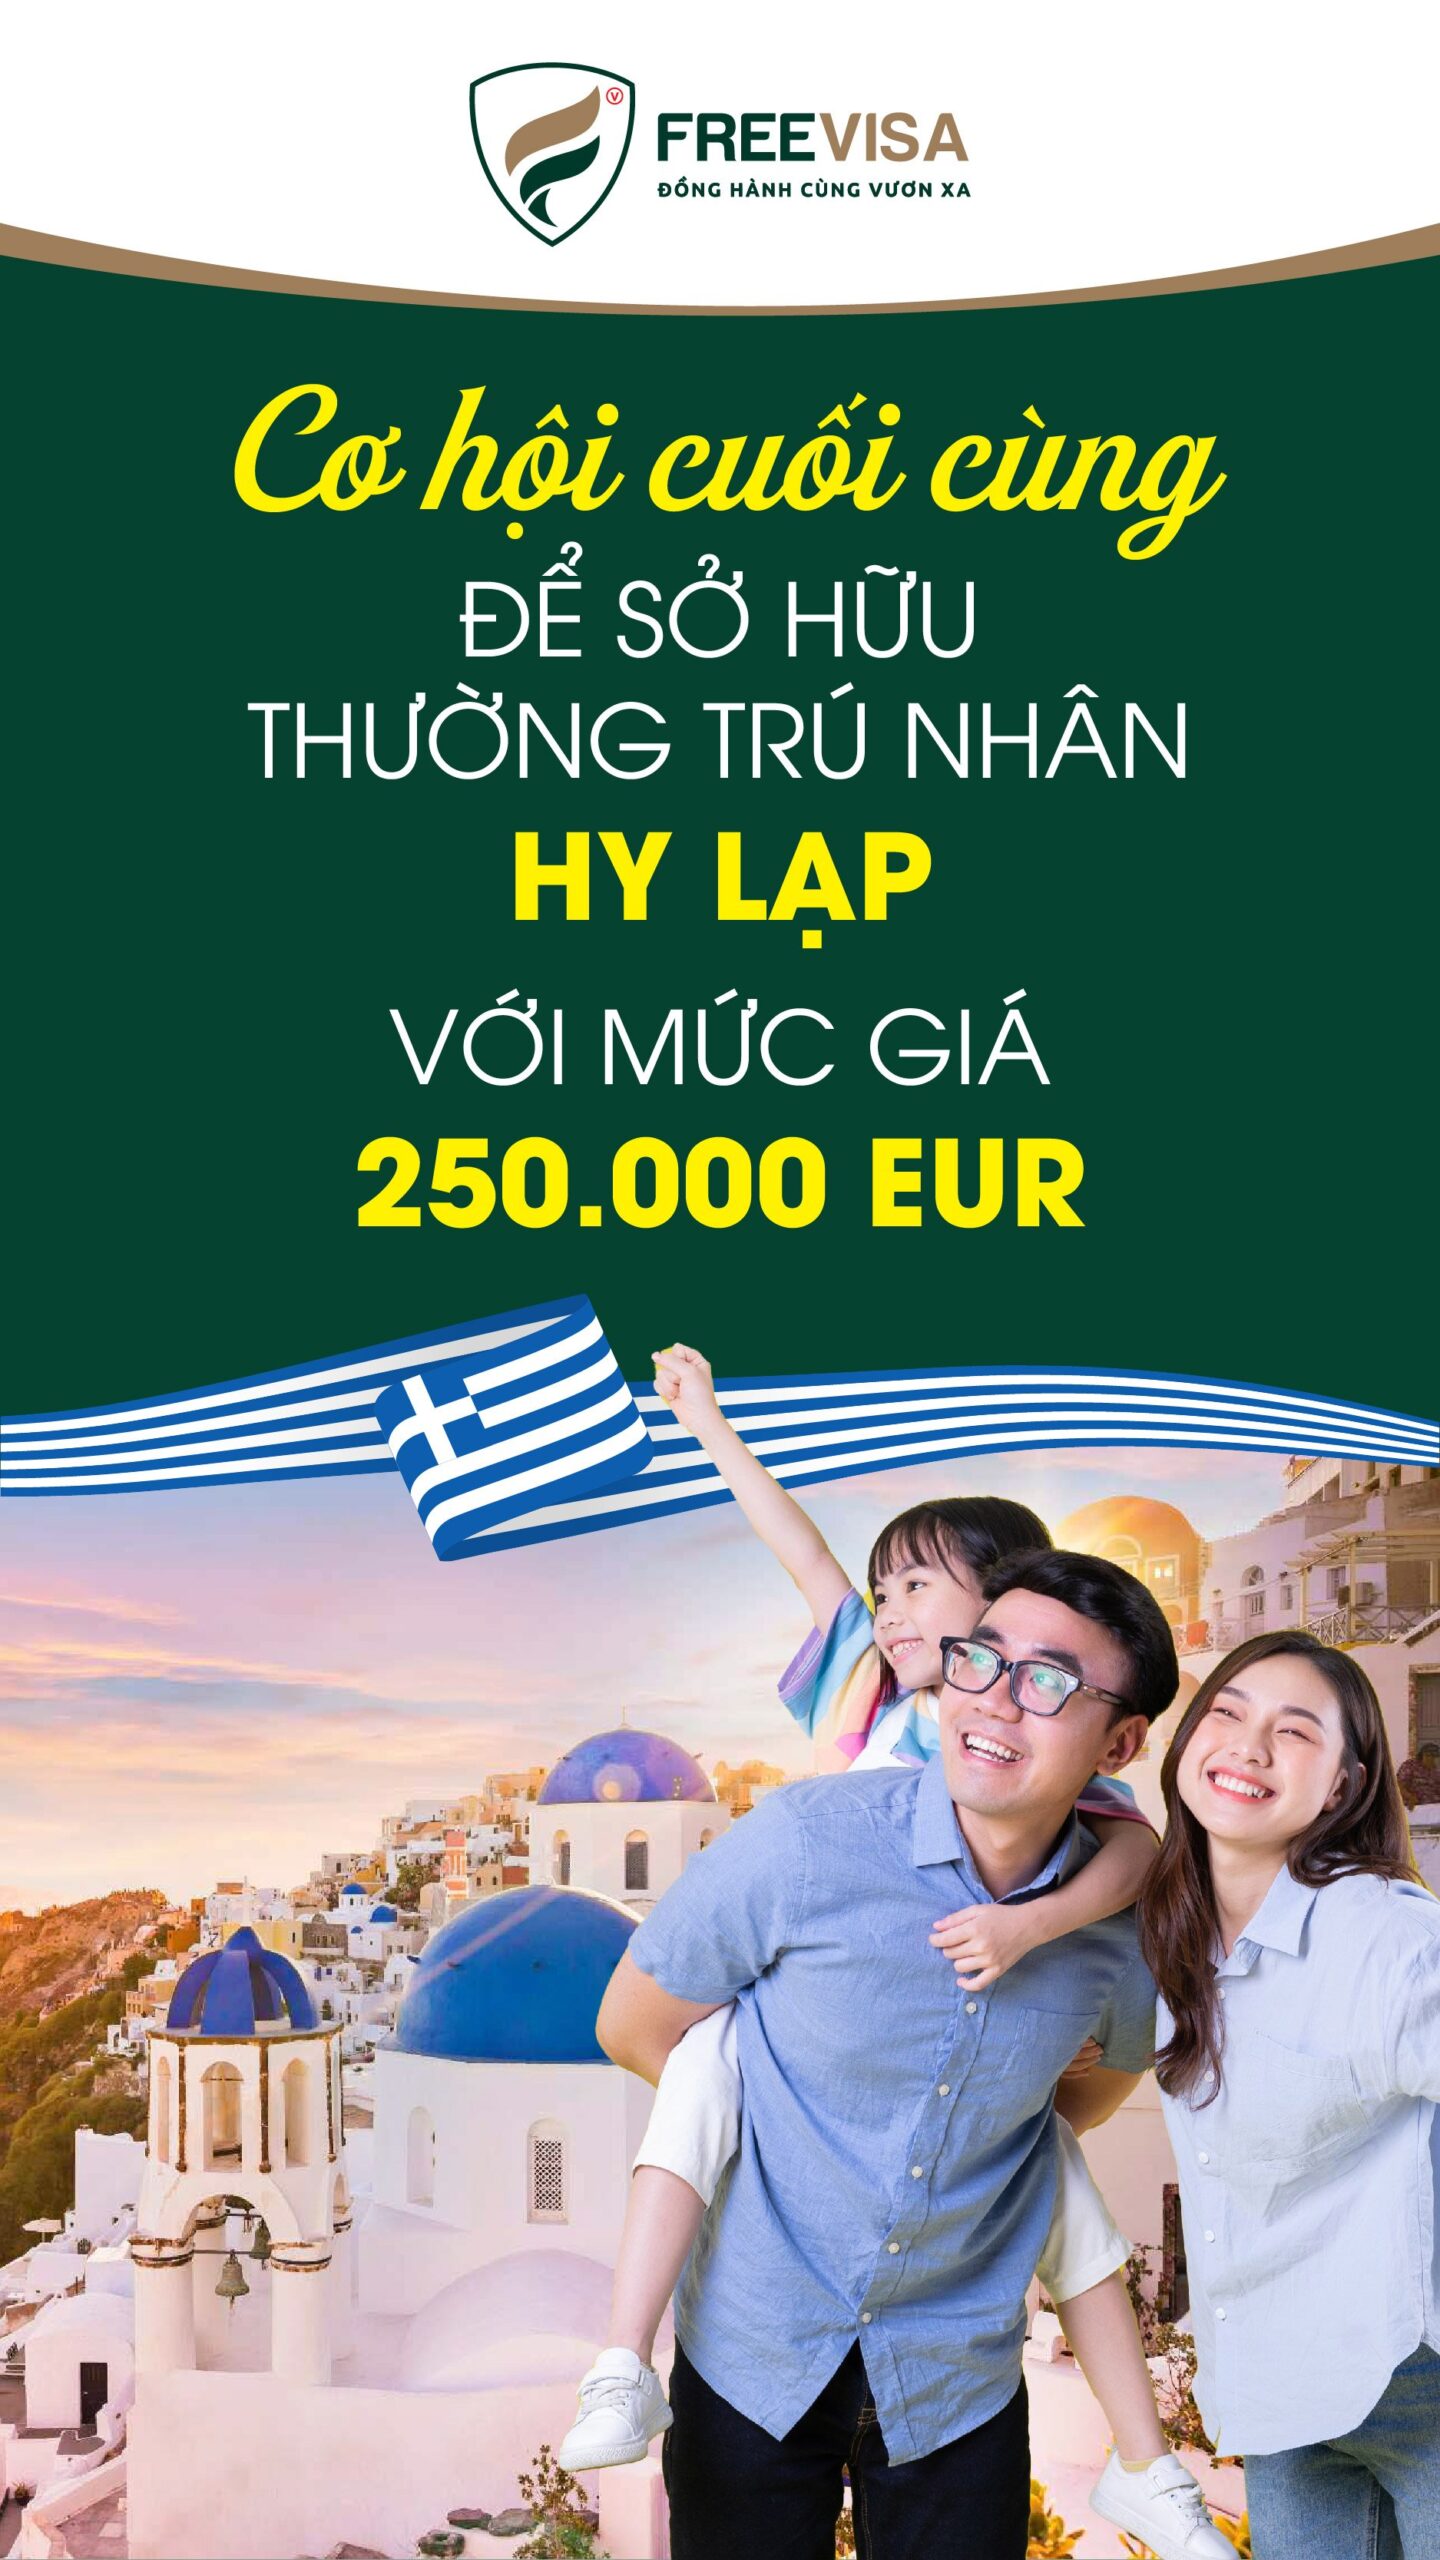 Cơ hội cuối cùng nhận Thường trú nhân Hy Lạp chỉ với 250.000 EUR